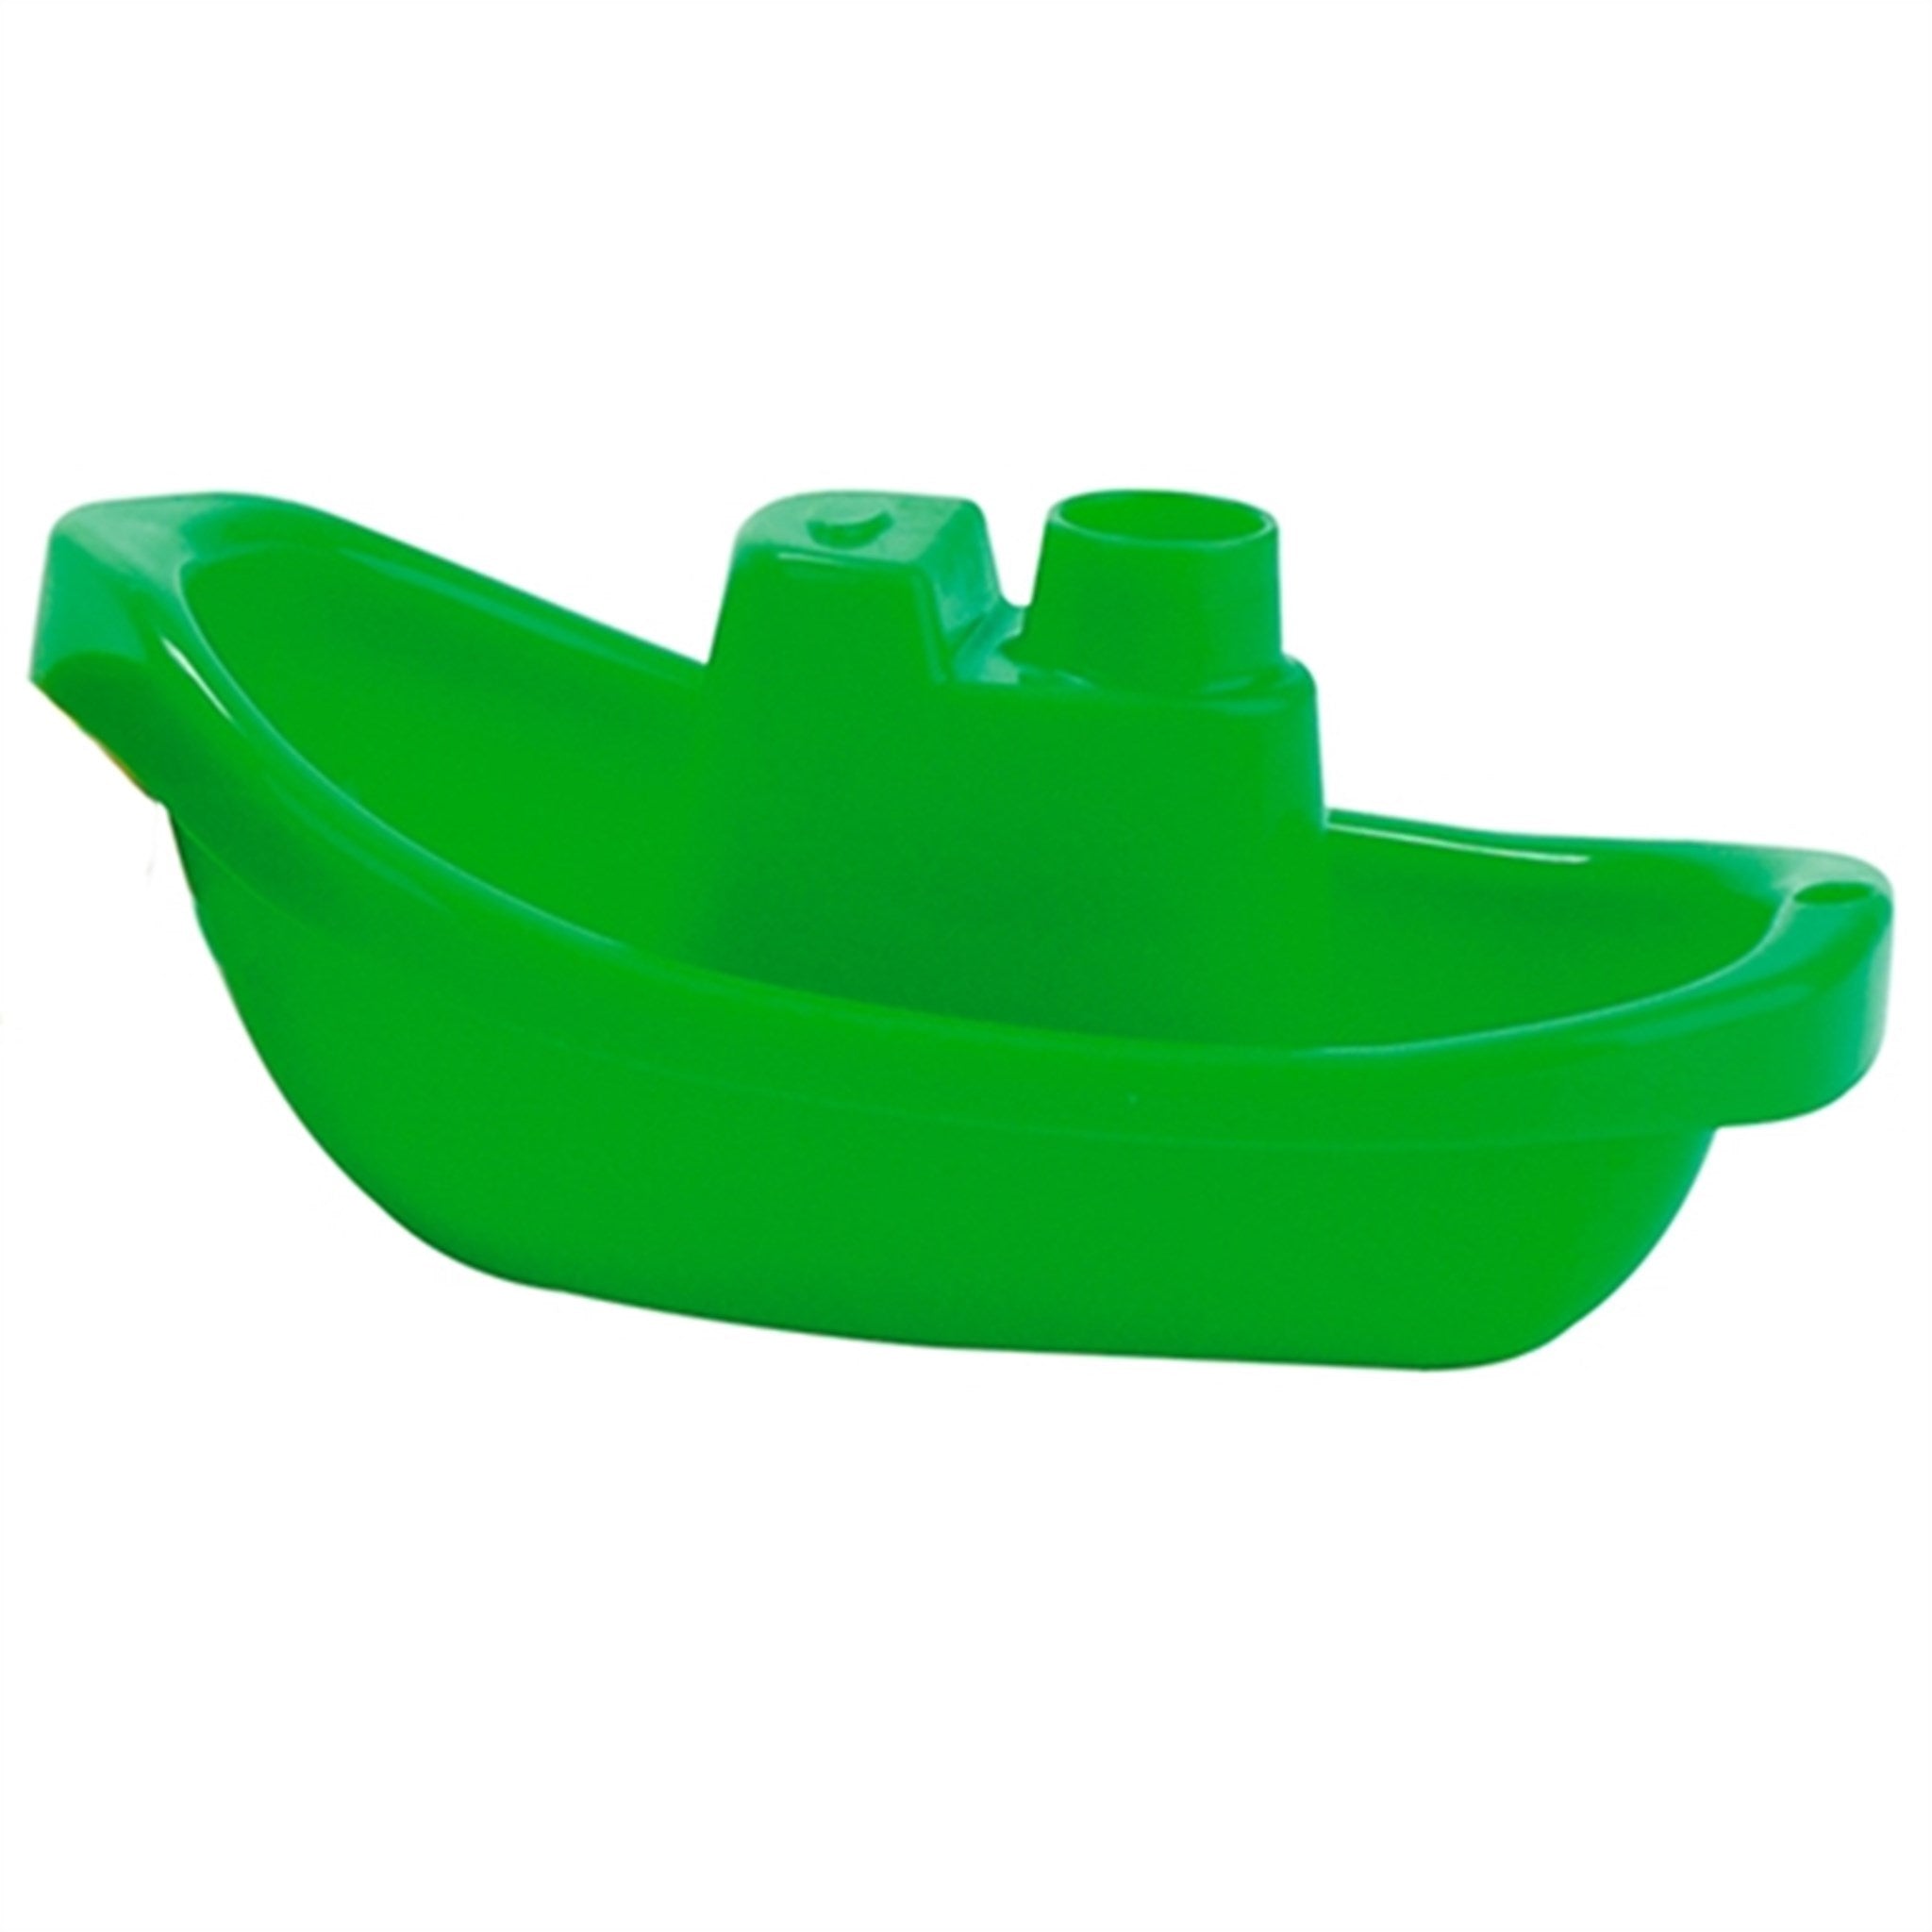 Spielstabil Boat Green